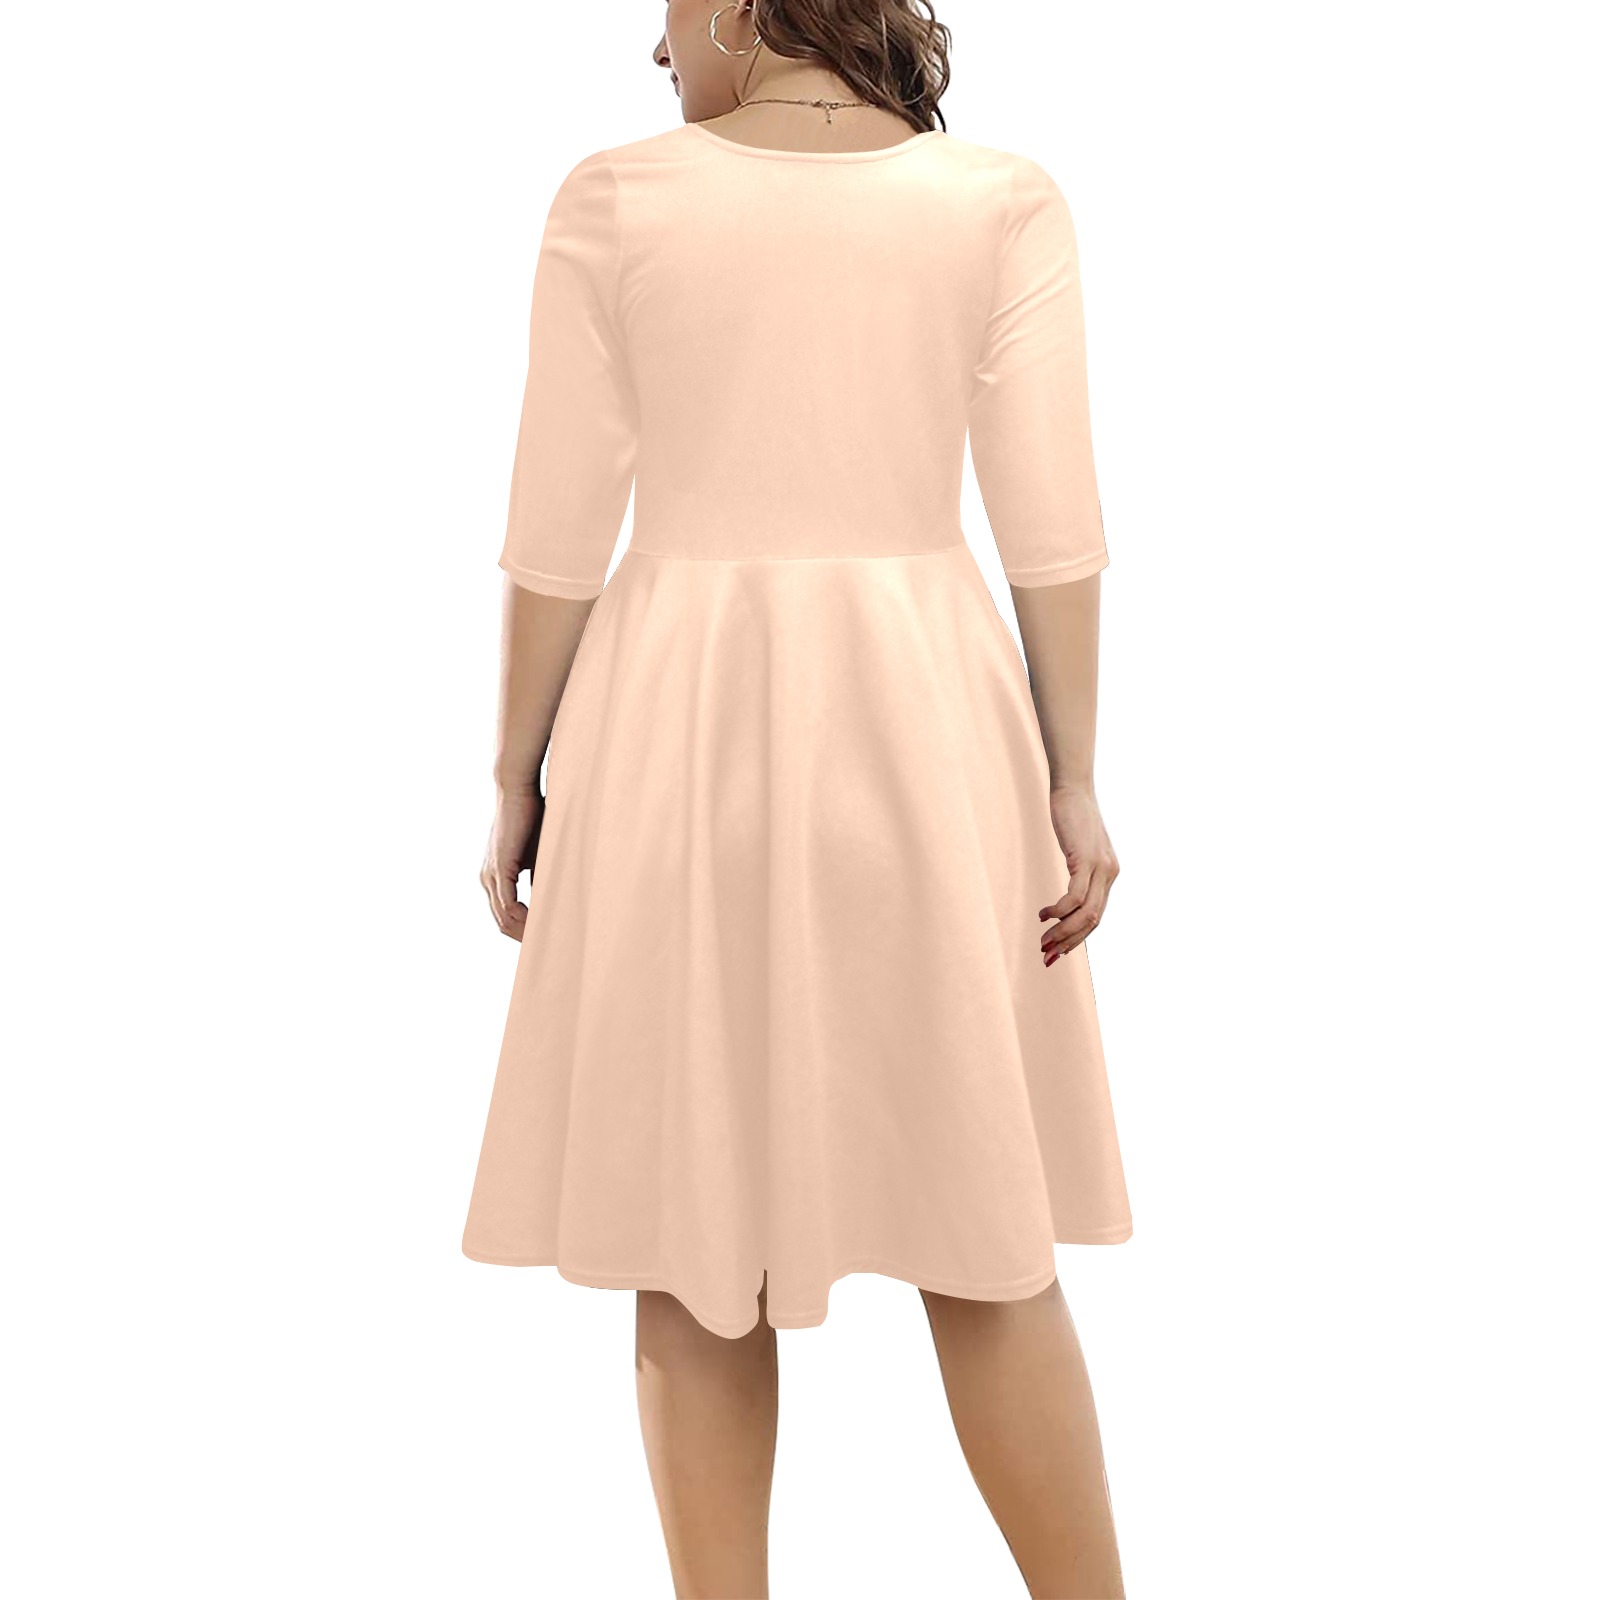 color apricot Half Sleeve Skater Dress (Model D61)